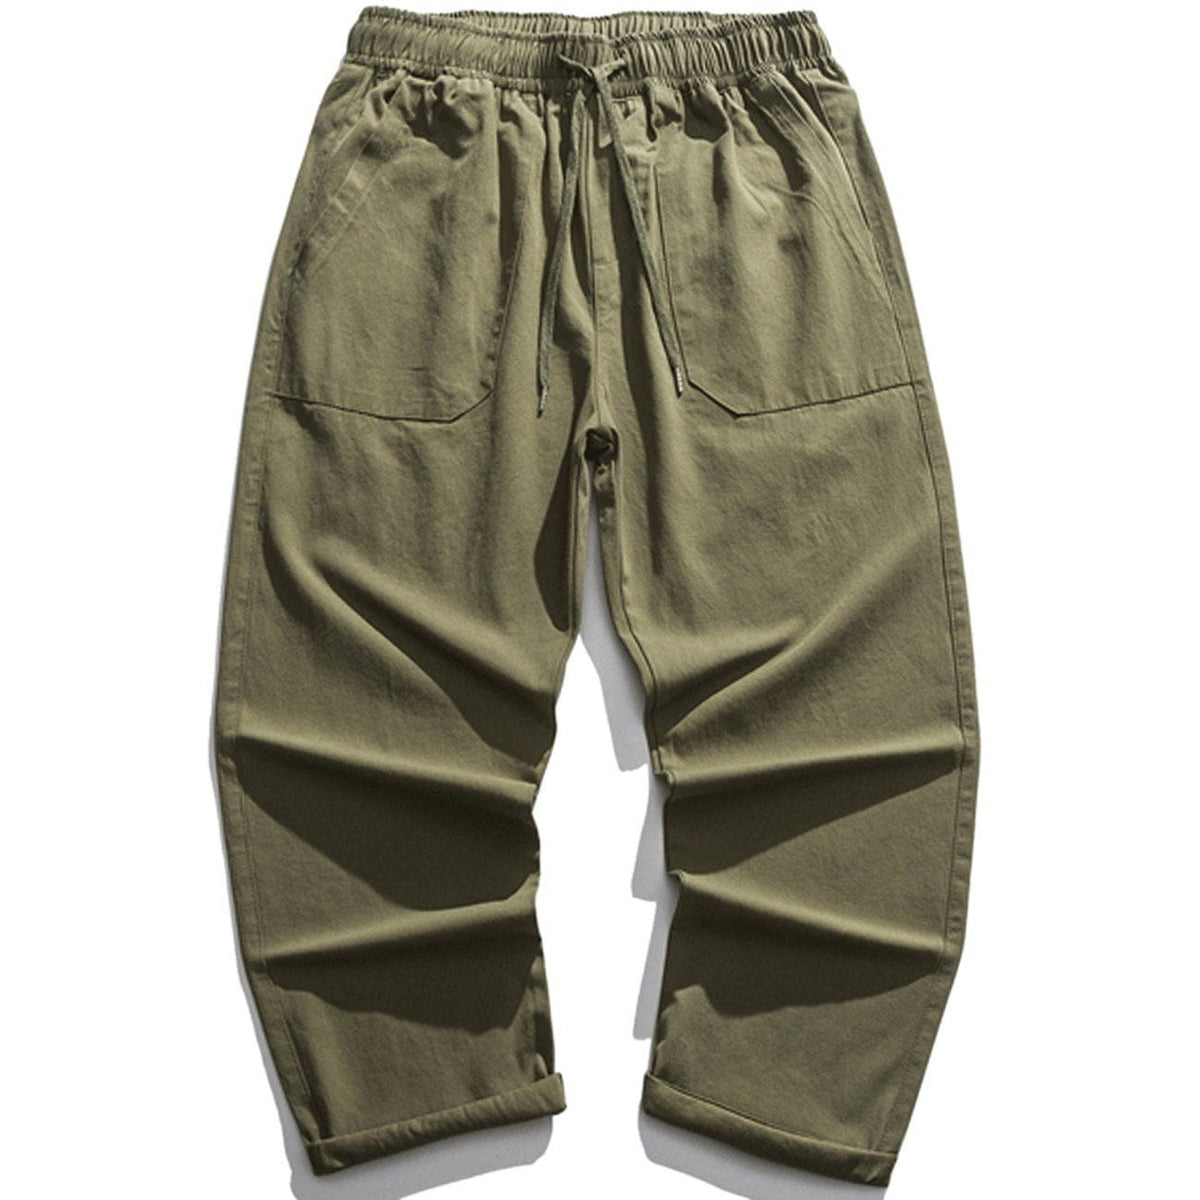 Eprezzy® - Pocket Solid Pants Streetwear Fashion - eprezzy.com